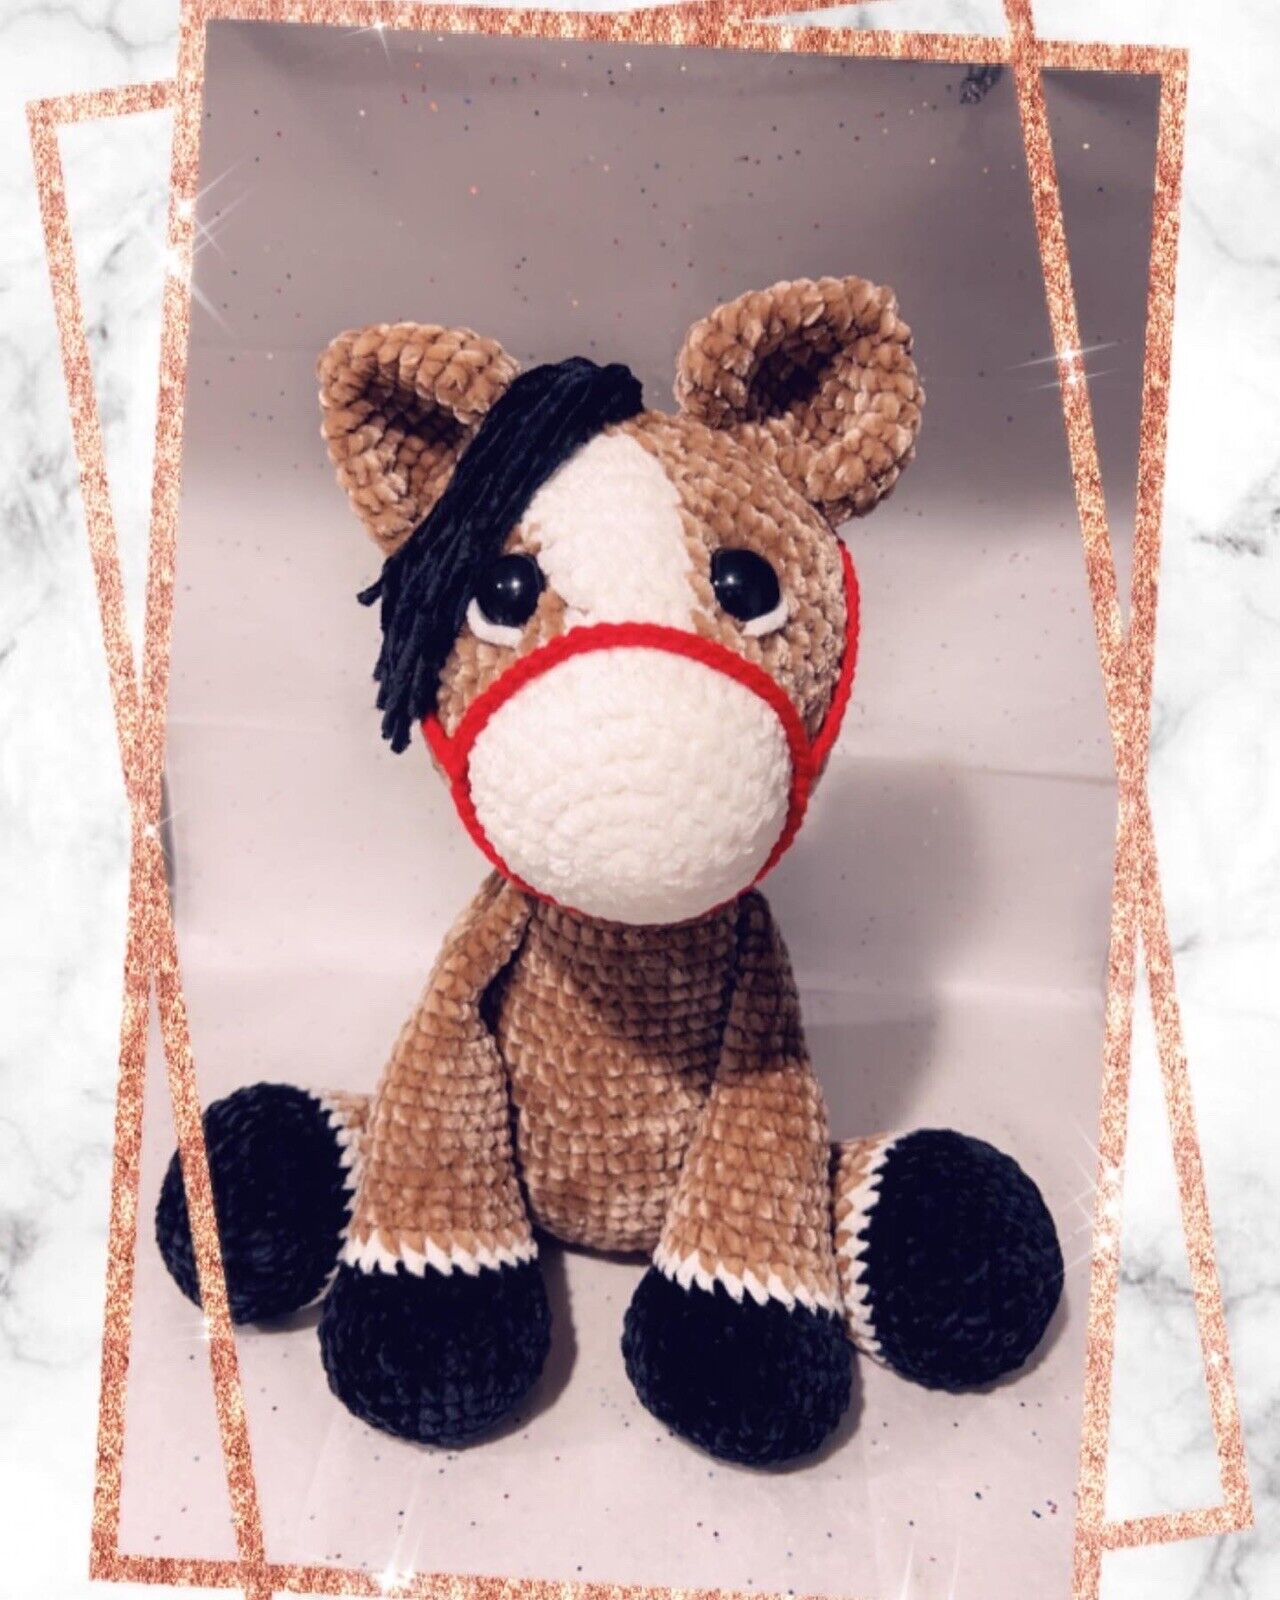 Handmade Crochet Horse Plushie/ Stuffed Animal For Gift Or Baby Shower